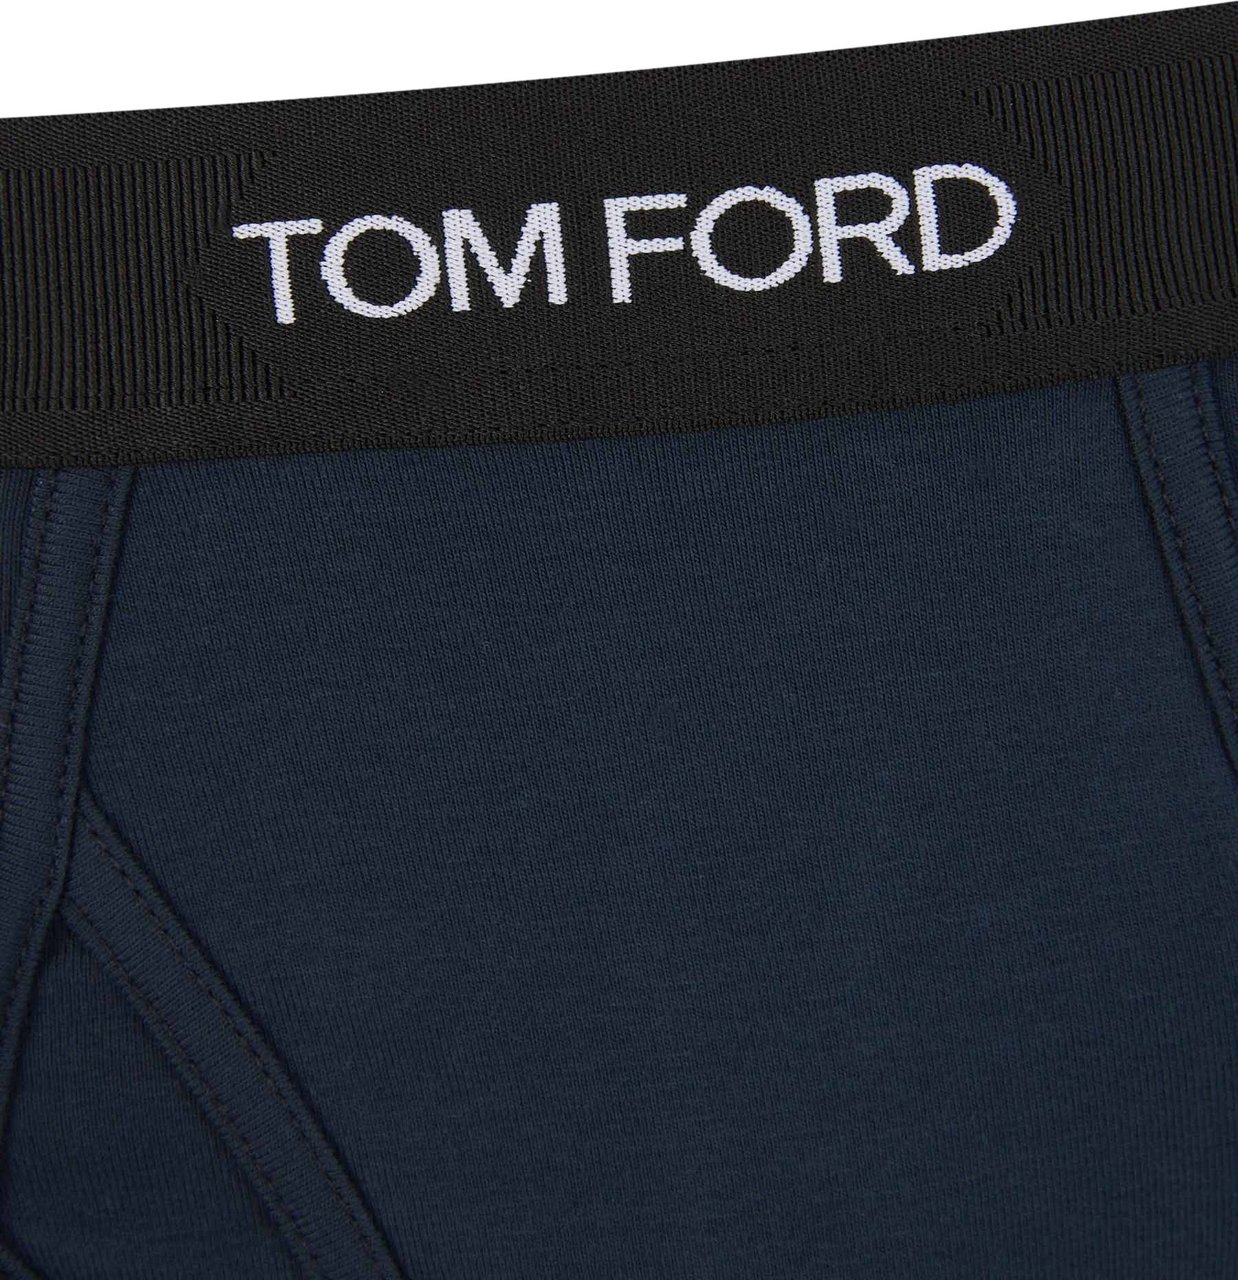 Tom Ford Logo Cotton Boxer Blauw